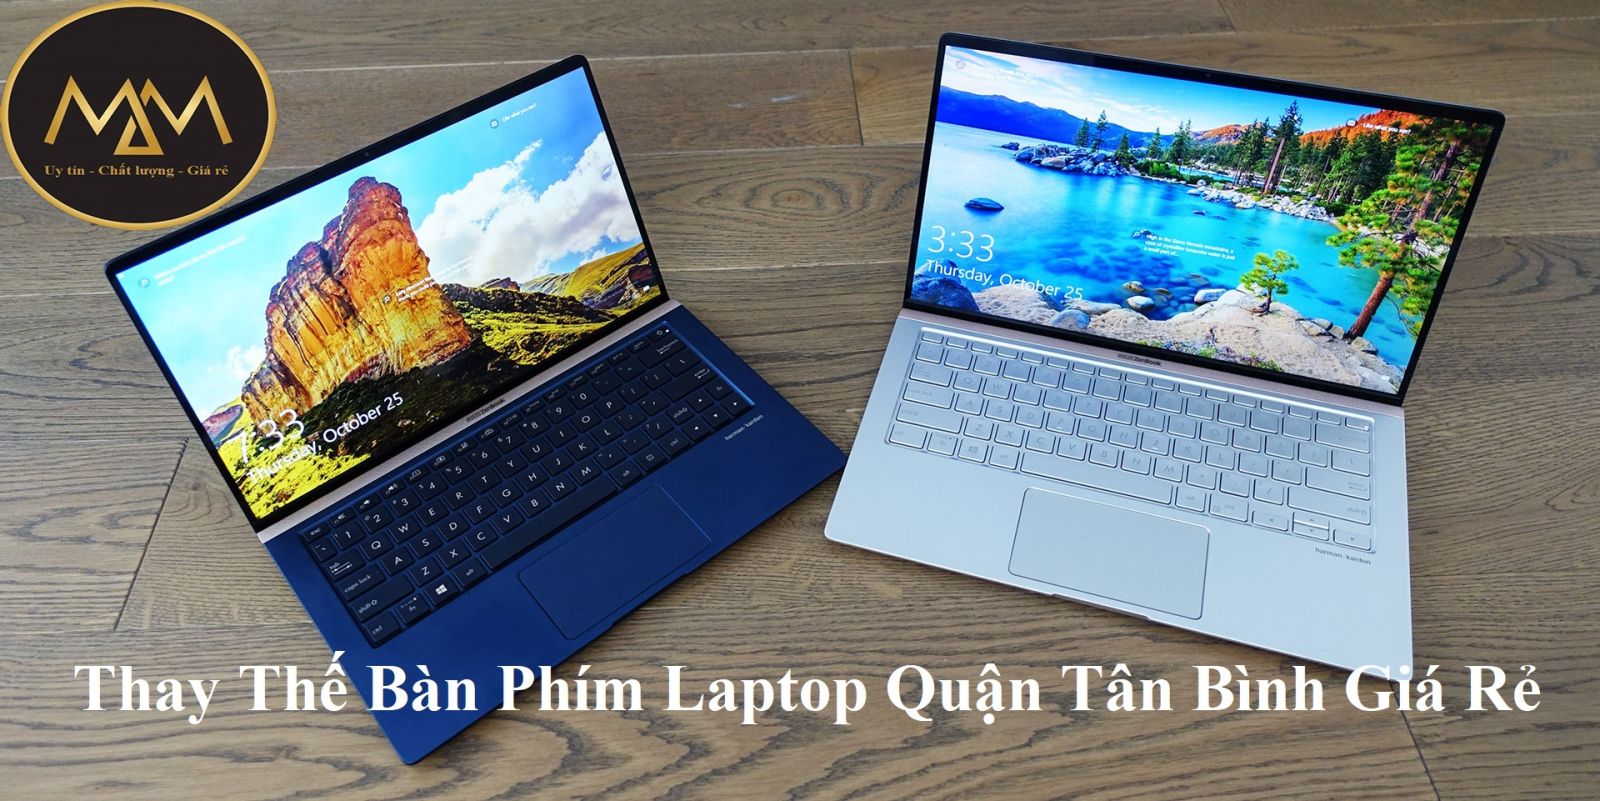 Thay Thế Bàn Phím Laptop Quận Tân Bình Giá Rẻ